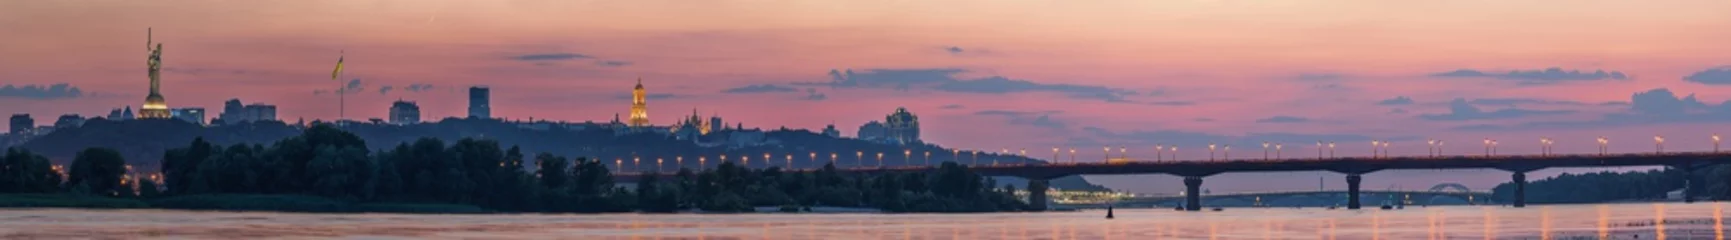 Kussenhoes Uitzicht op Kiev Pechersk Lavra, Motherland Monument, Kiev bruggen en de rivier de Dnjepr, na zonsondergang wordt een dunne halve maan aan de oranje hemel gezien. © underwaterstas